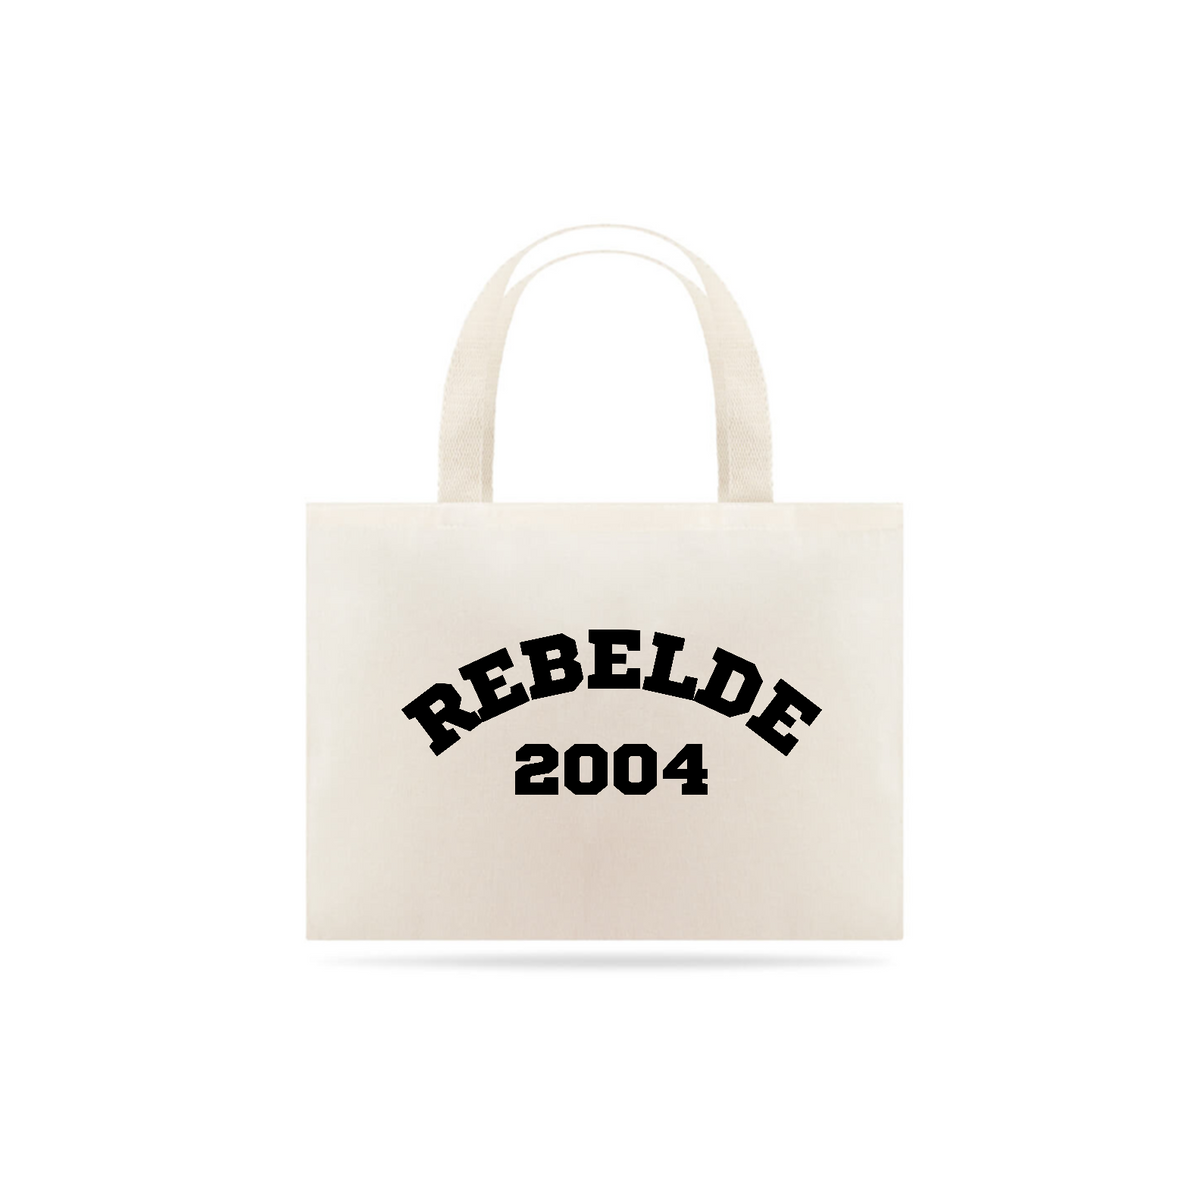 Nome do produto: Ecobag - Rebelde 2004 ®